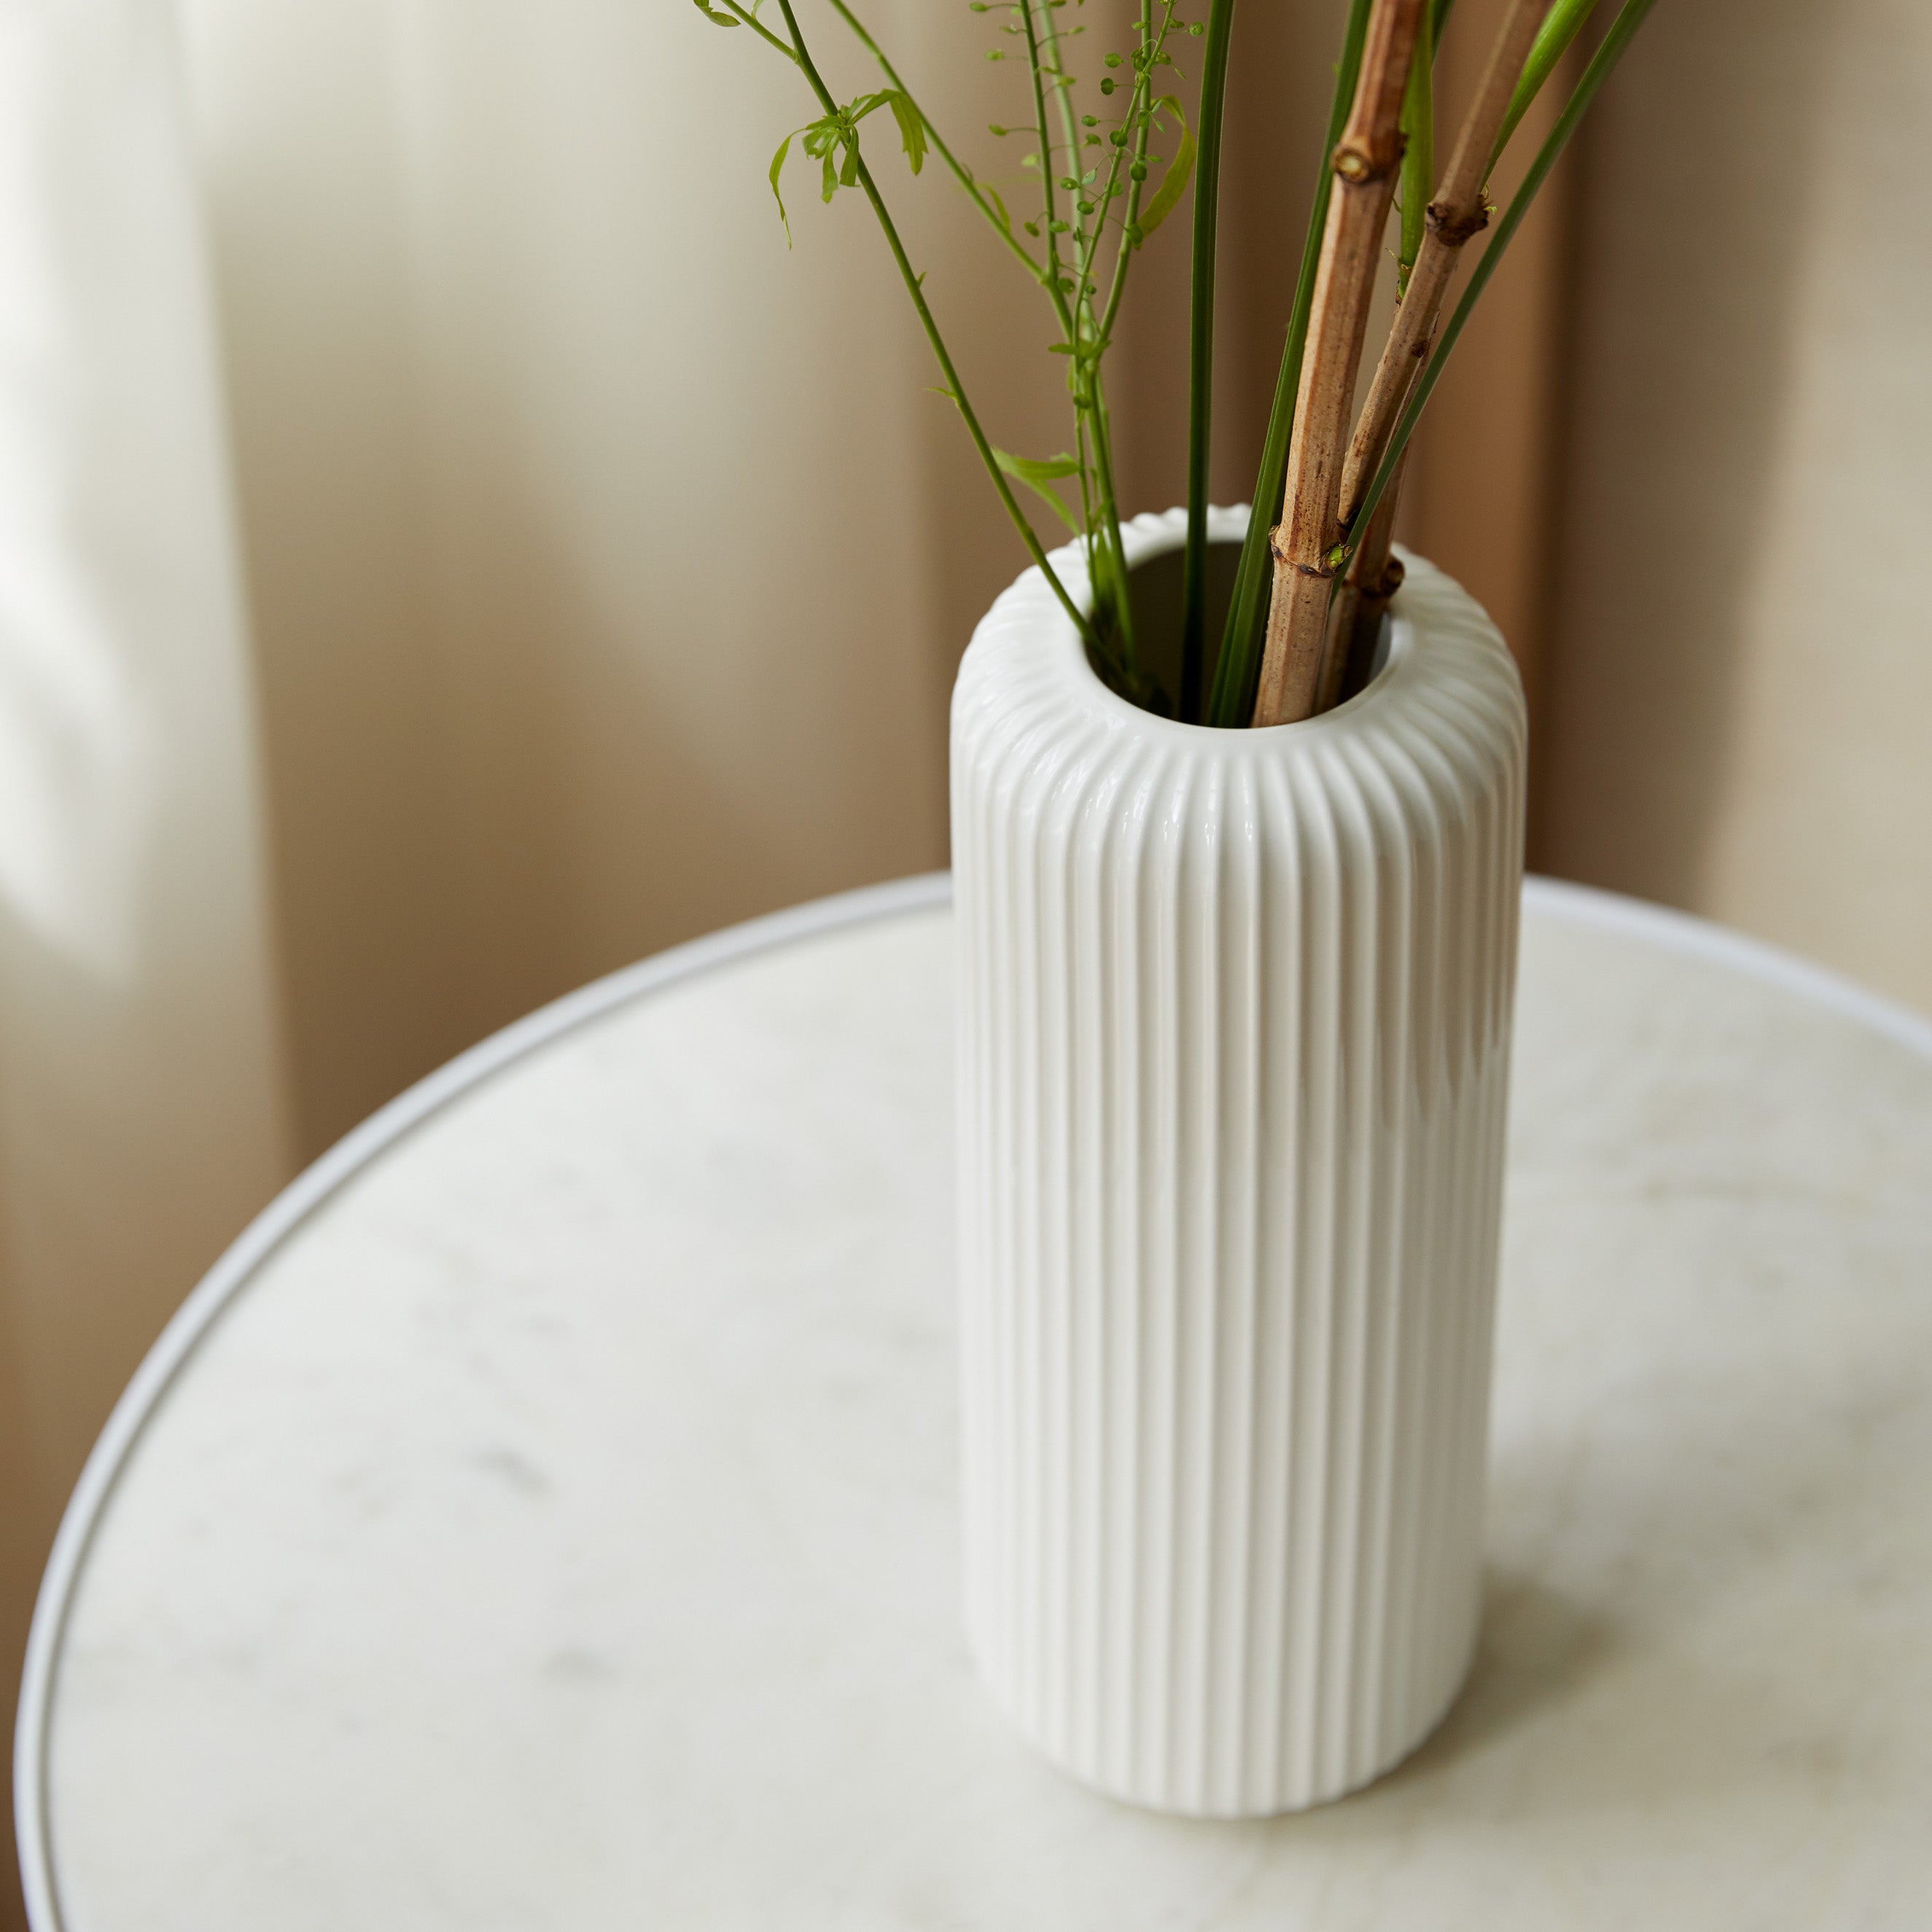 縦のラインが際立つシンプルな白い花瓶【Calm - カルム】